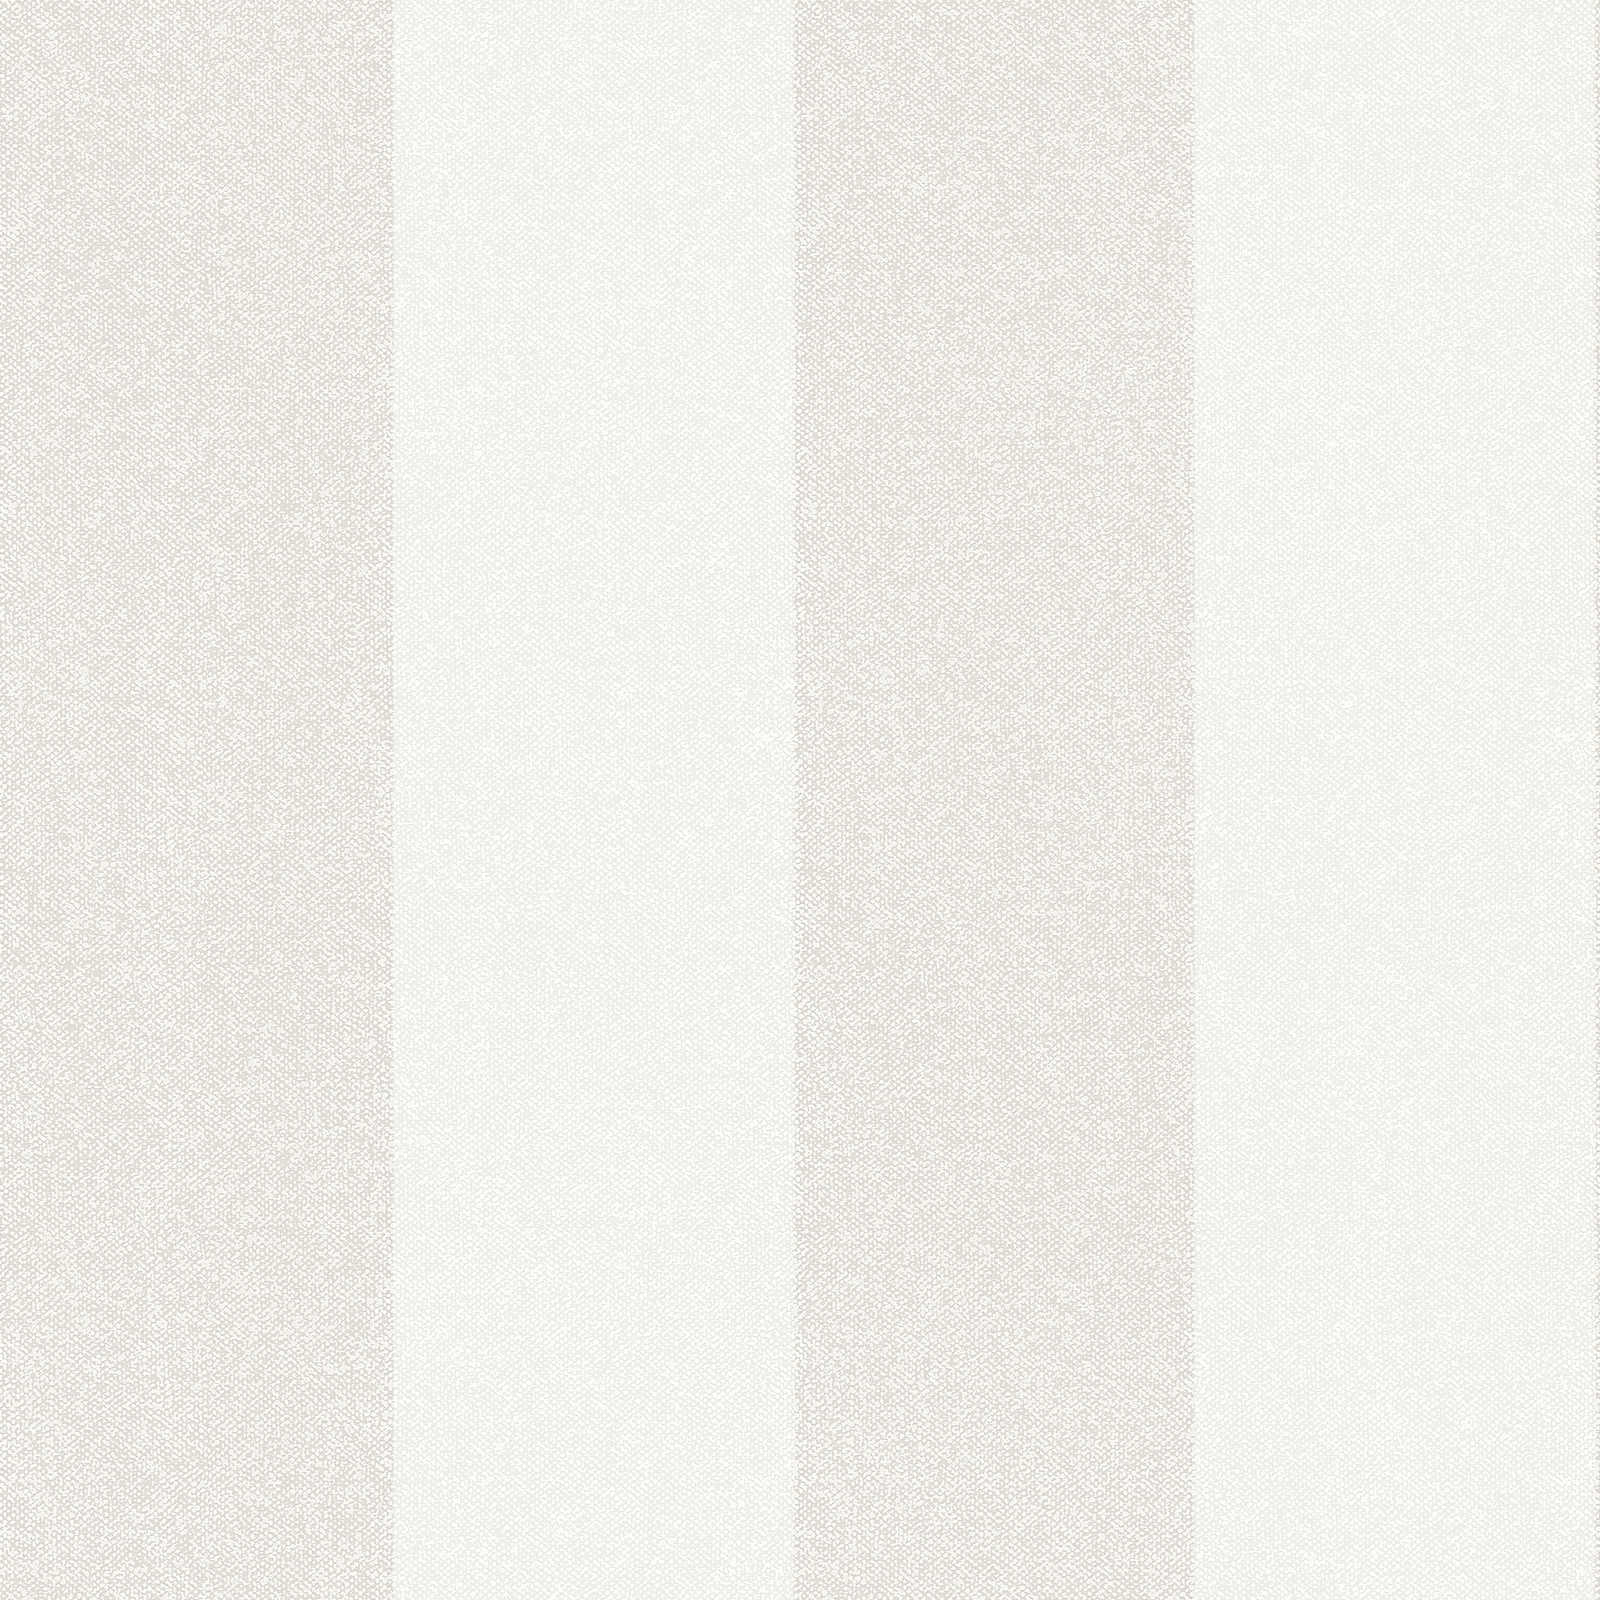 Striped wallpaper with linen look - cream, grey, beige
